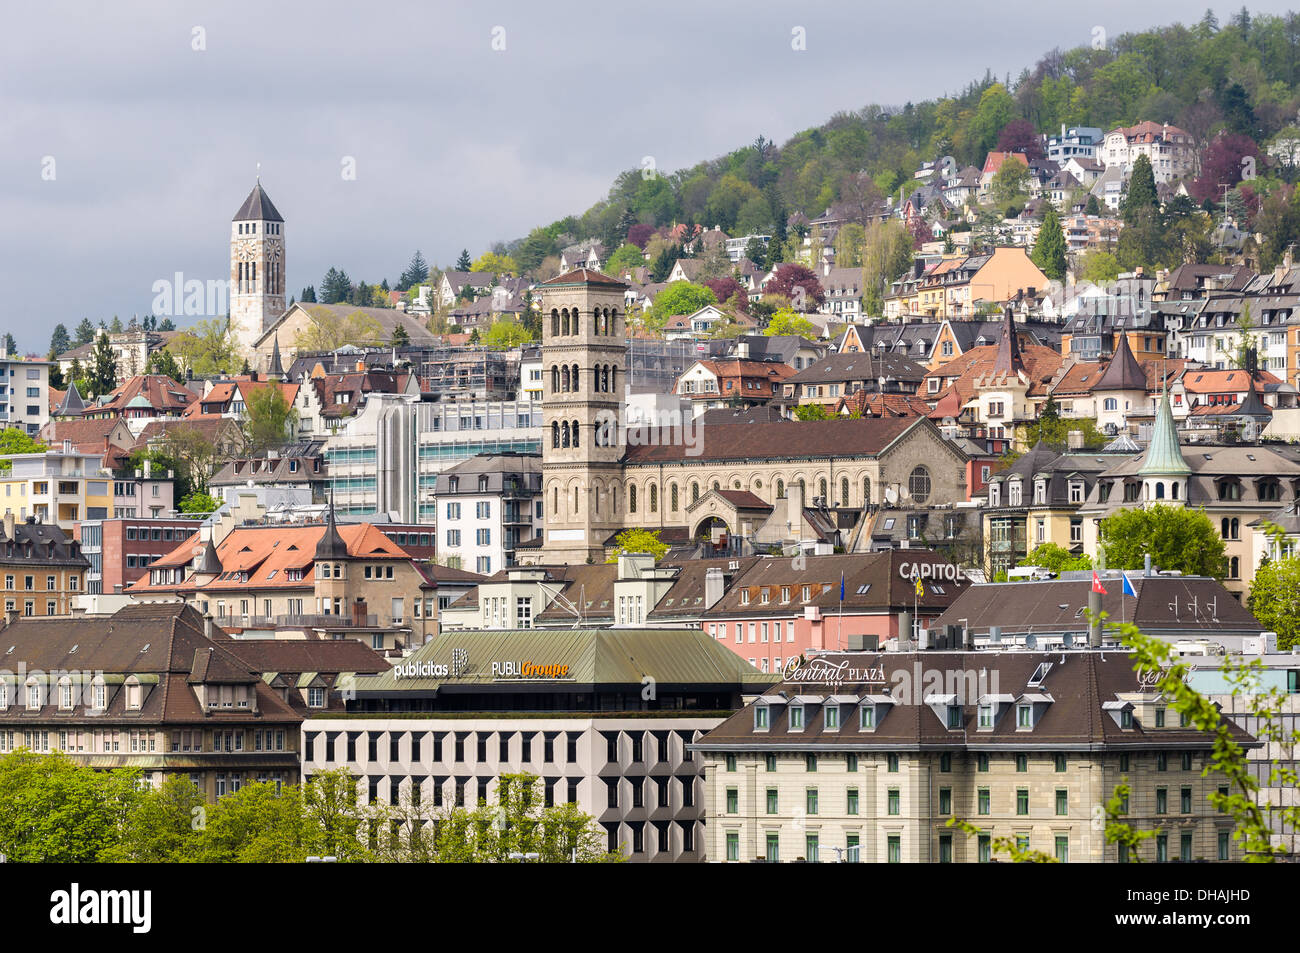 Zurigo, Svizzera: centro storico Foto Stock